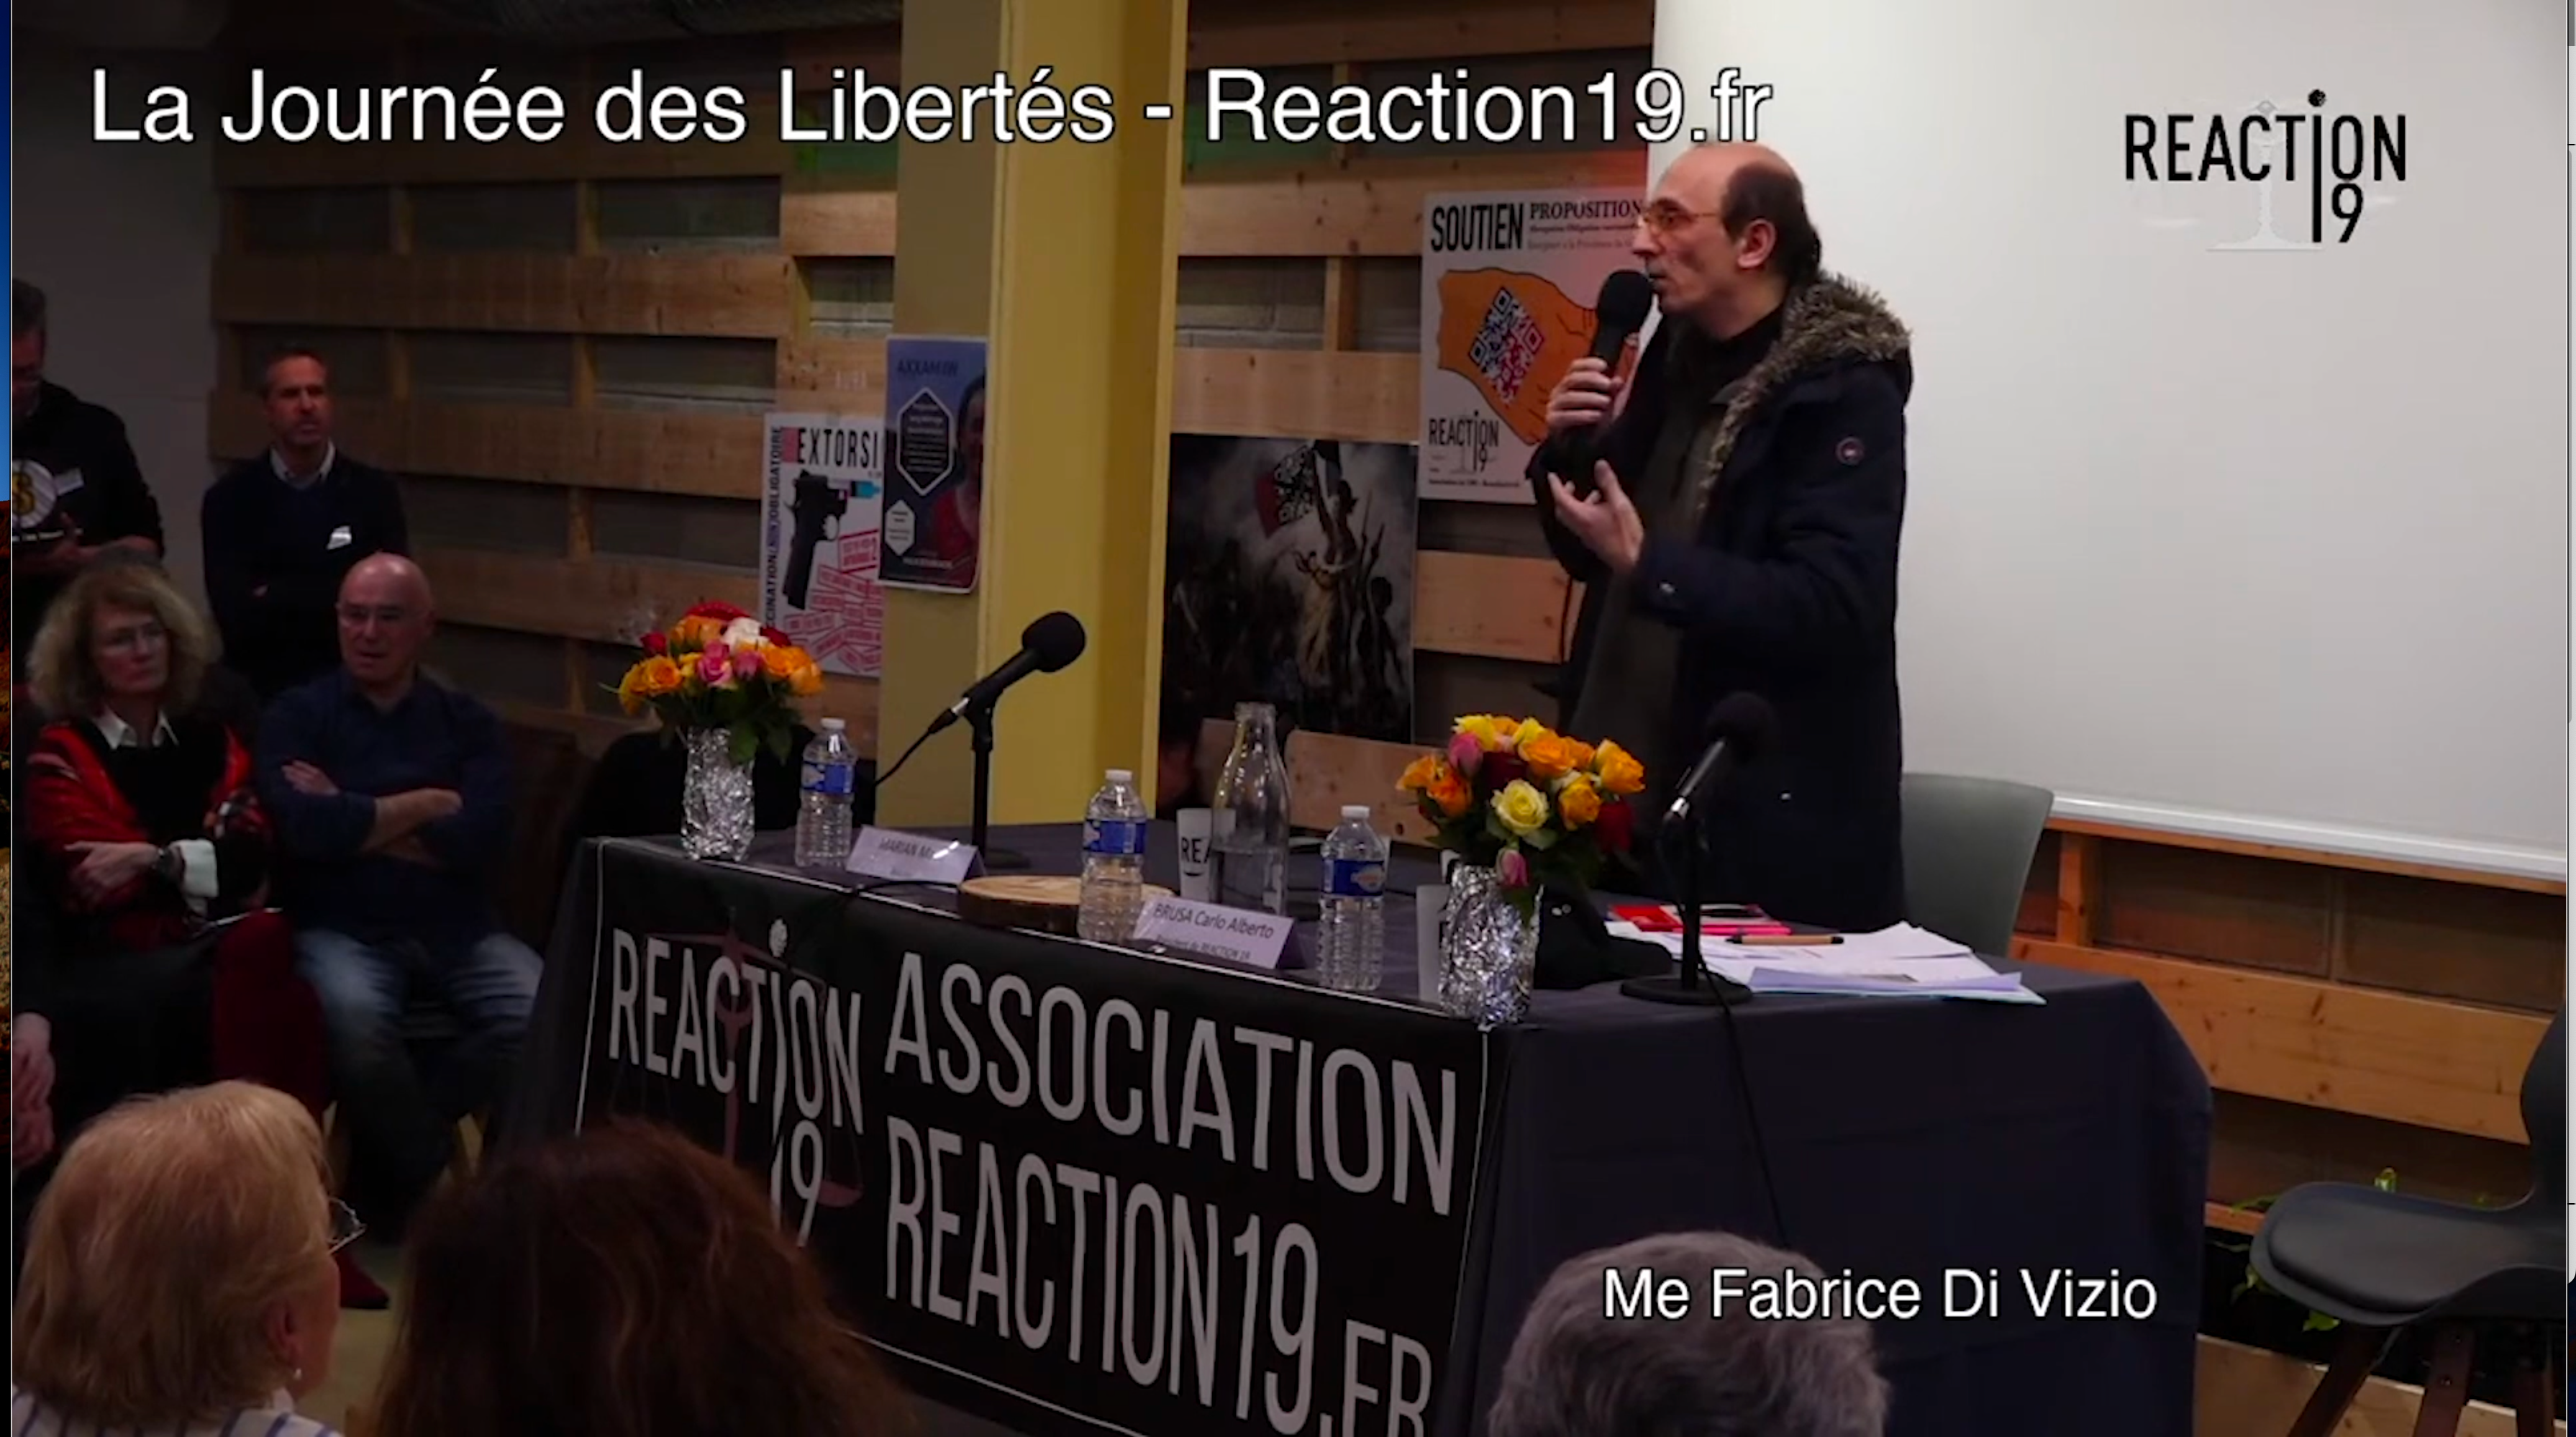 Extrait vidéo avec Me Fabrice Di Vizion lors de son passage à La journée des Libertés de reaction19.fr du 27 janvier 2023